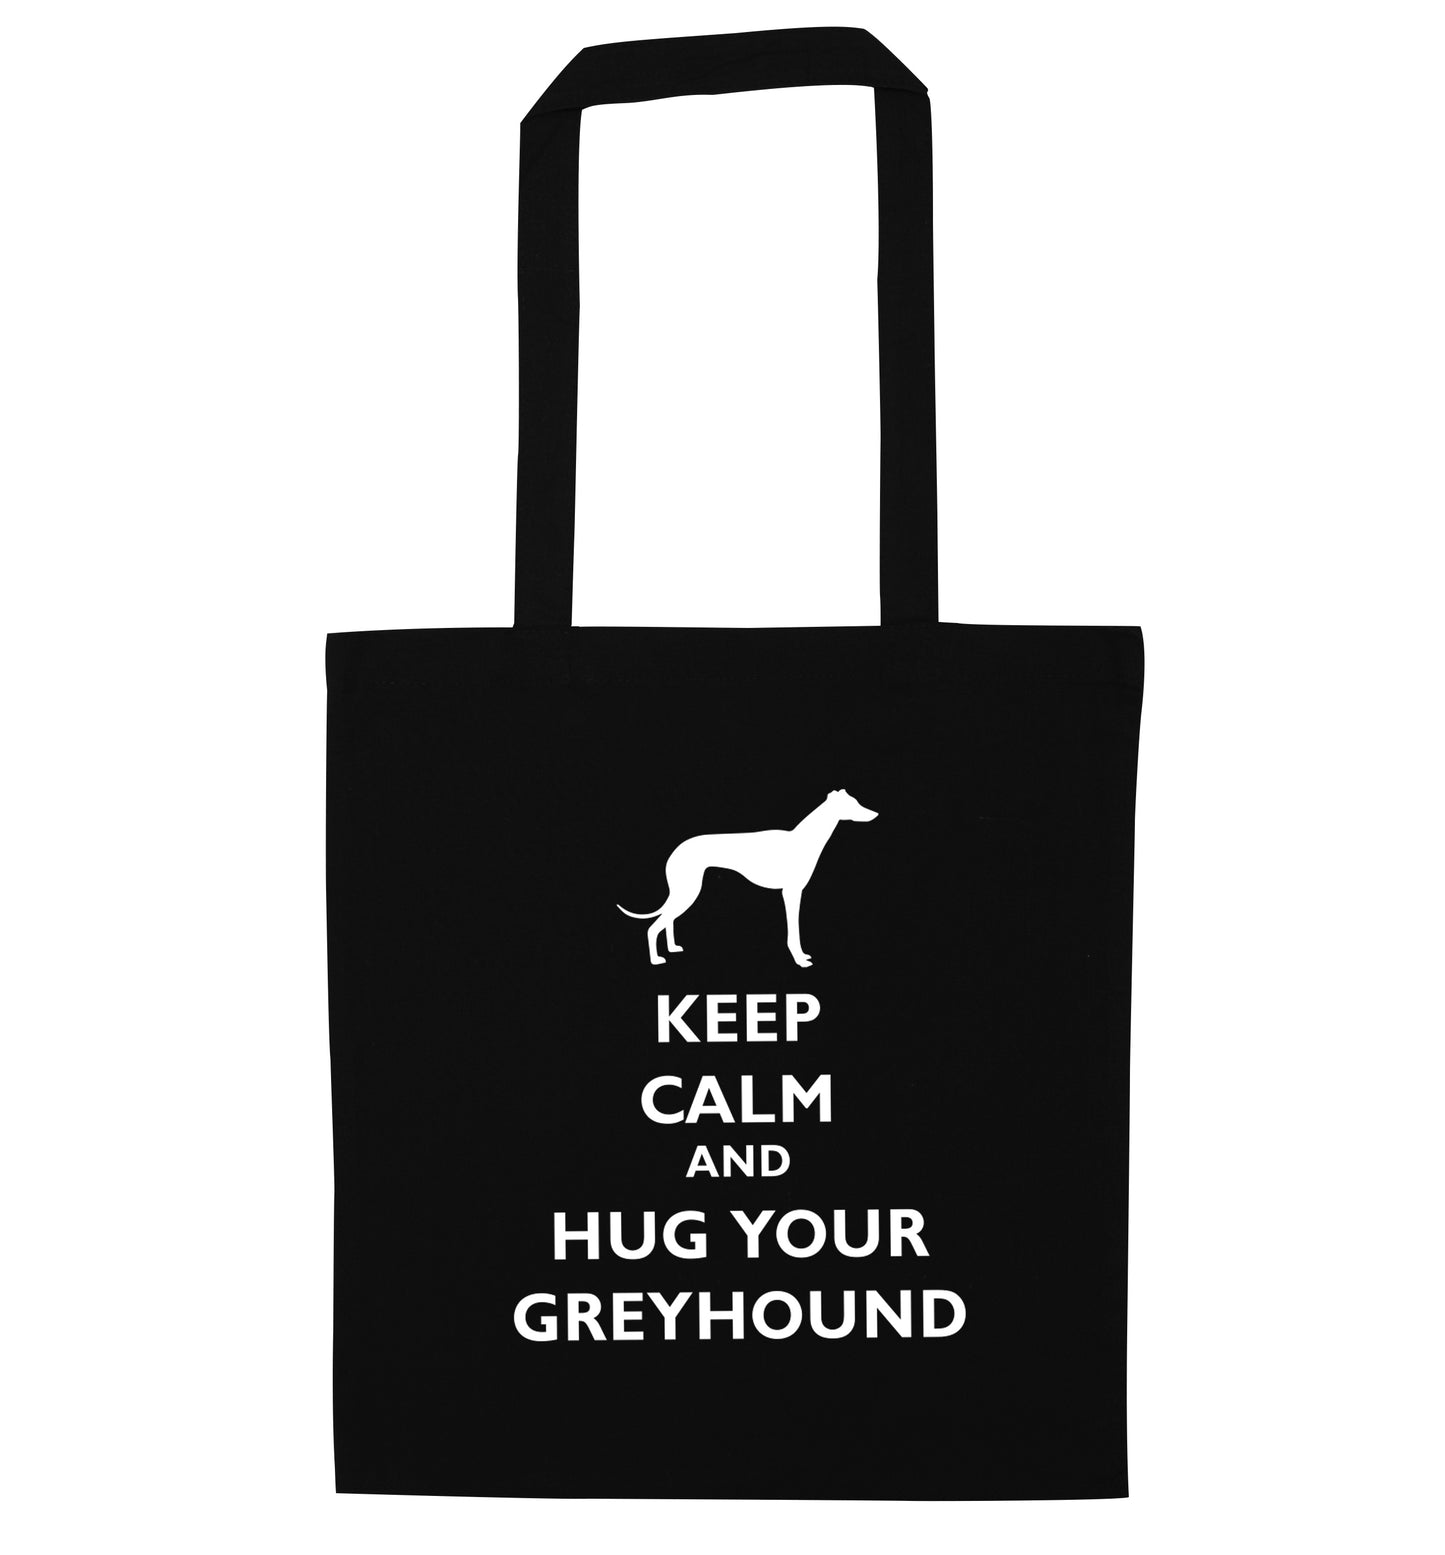 Keep calm and hug your greyhound black tote bag